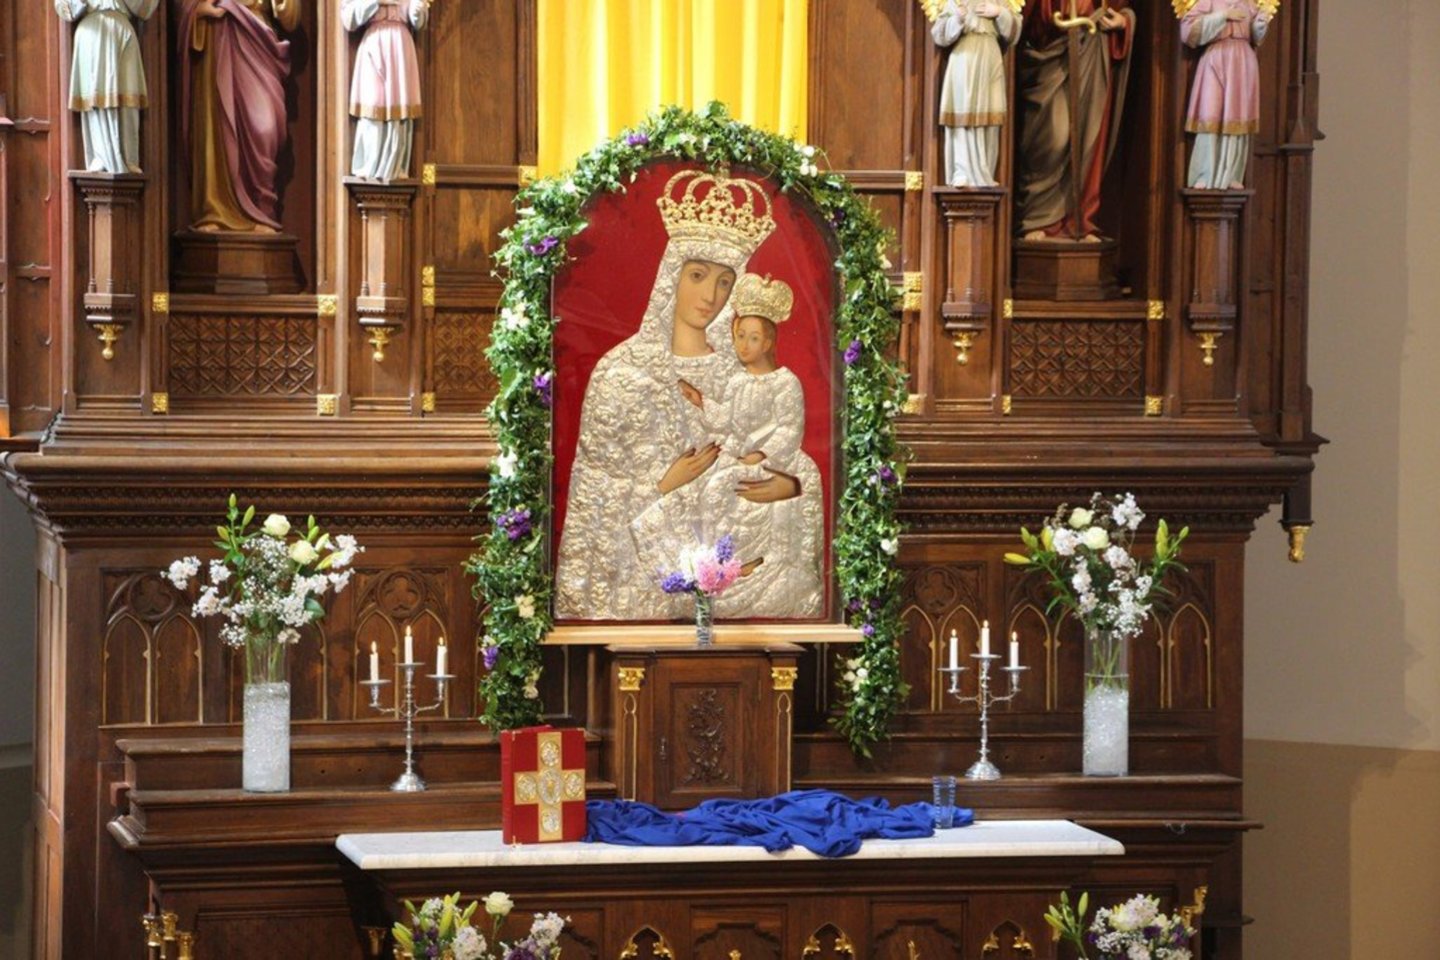  Švč. Mergelės Marijos su kūdikiu ant rankų paveikslas sugrįžo į Krekenavos baziliką po restauracijos.<br> Organizatorių nuotr.